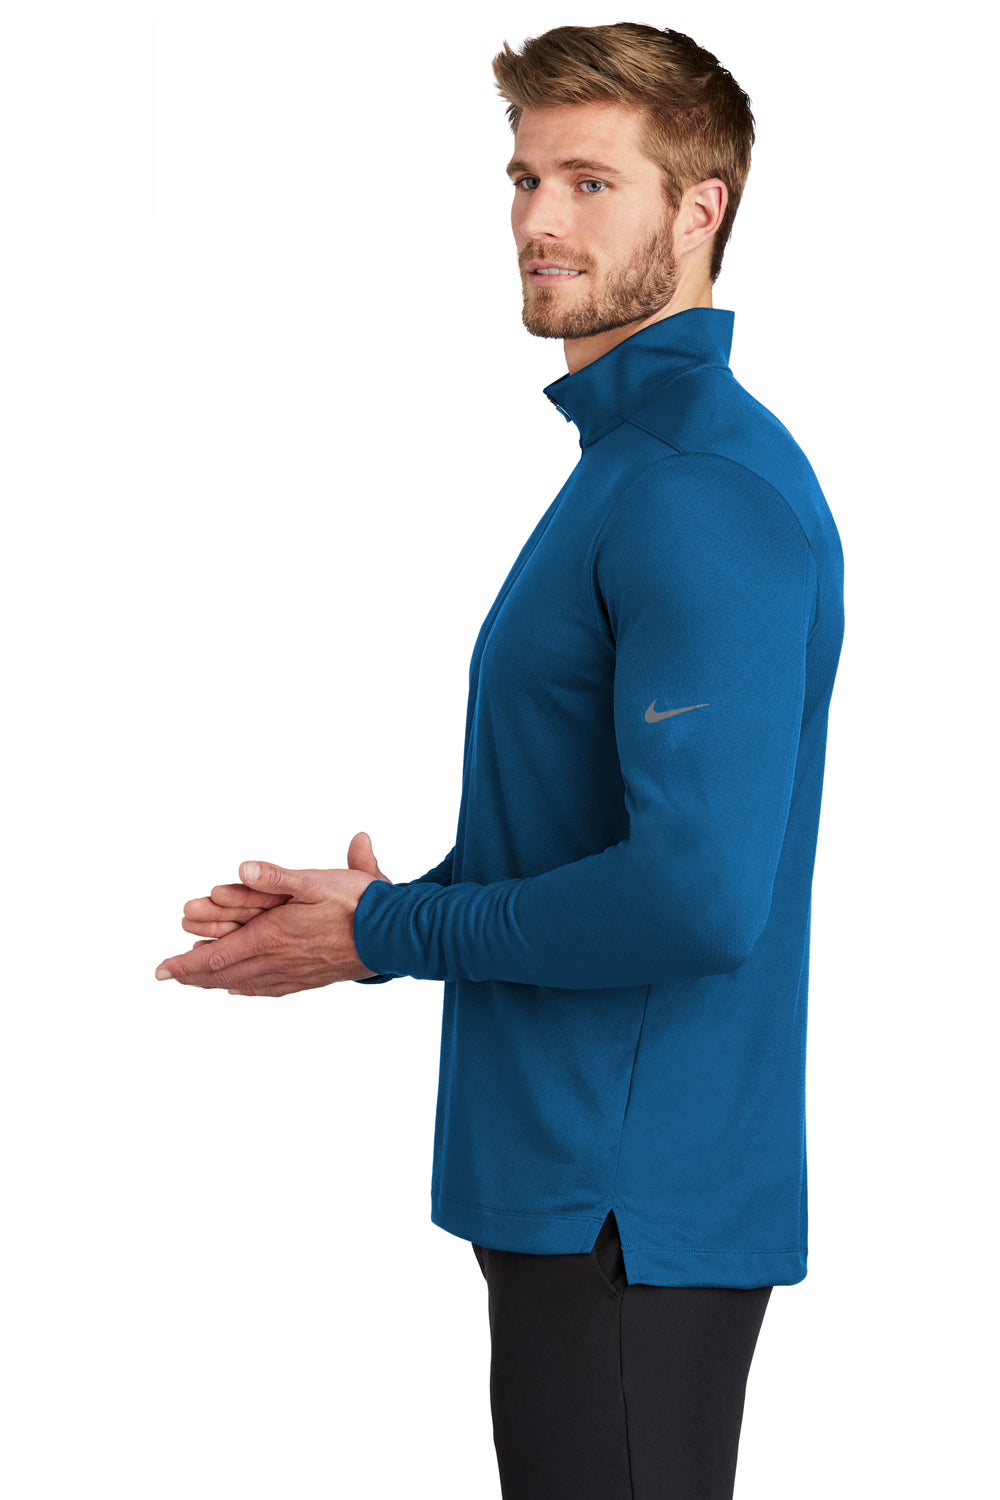 Nike NKBV6044 Mens Dri-Fit Moisture Wicking 1/4 Zip Sweatshirt Gym Blue Model Side